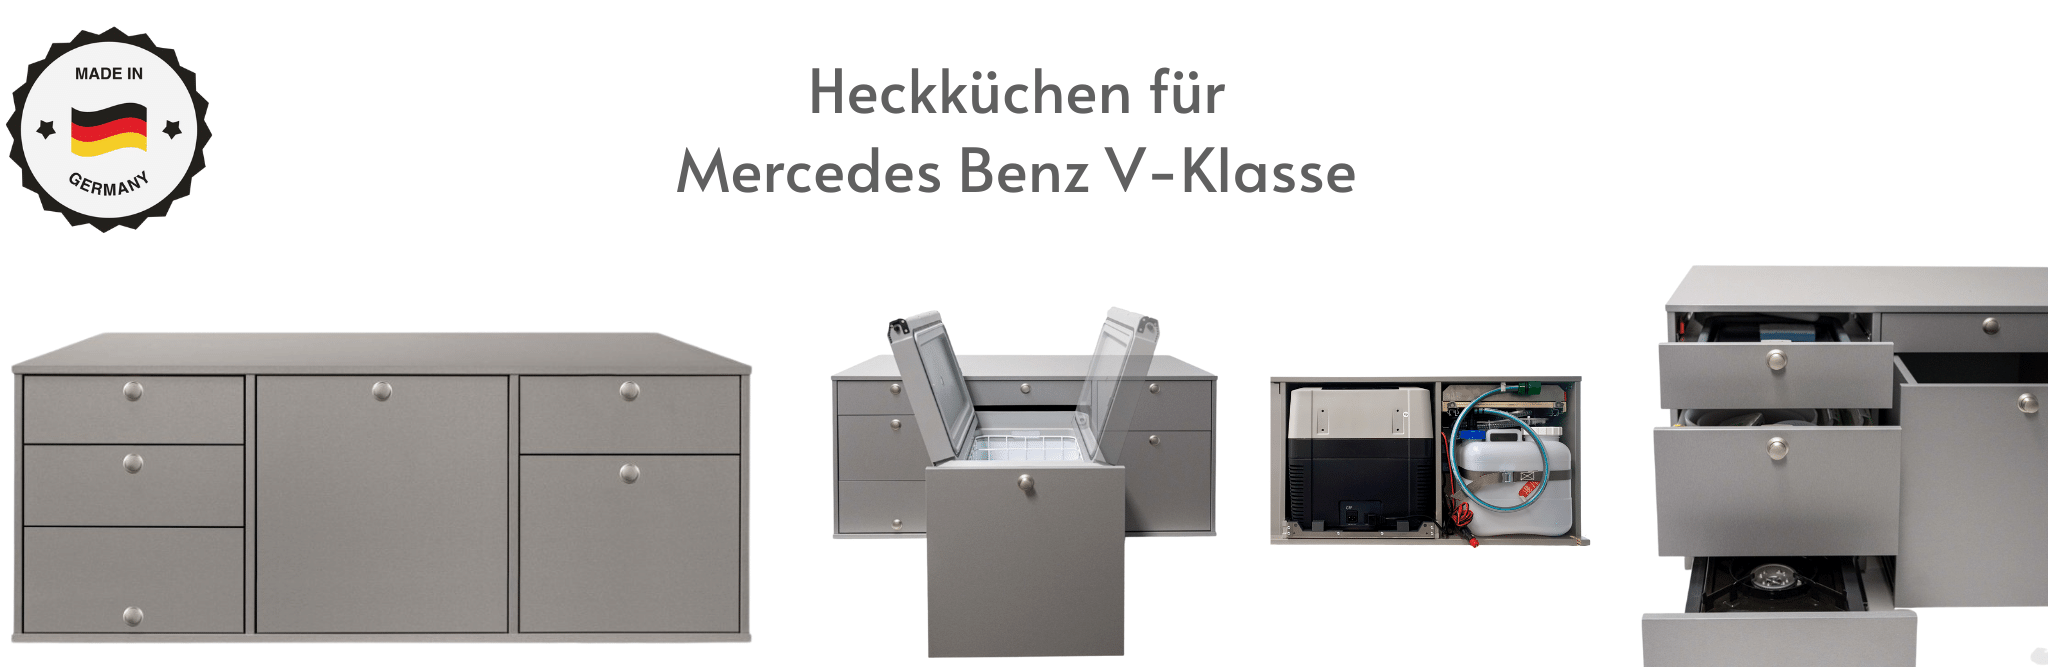 Heckküche für Mercedes Benz V-Klasse